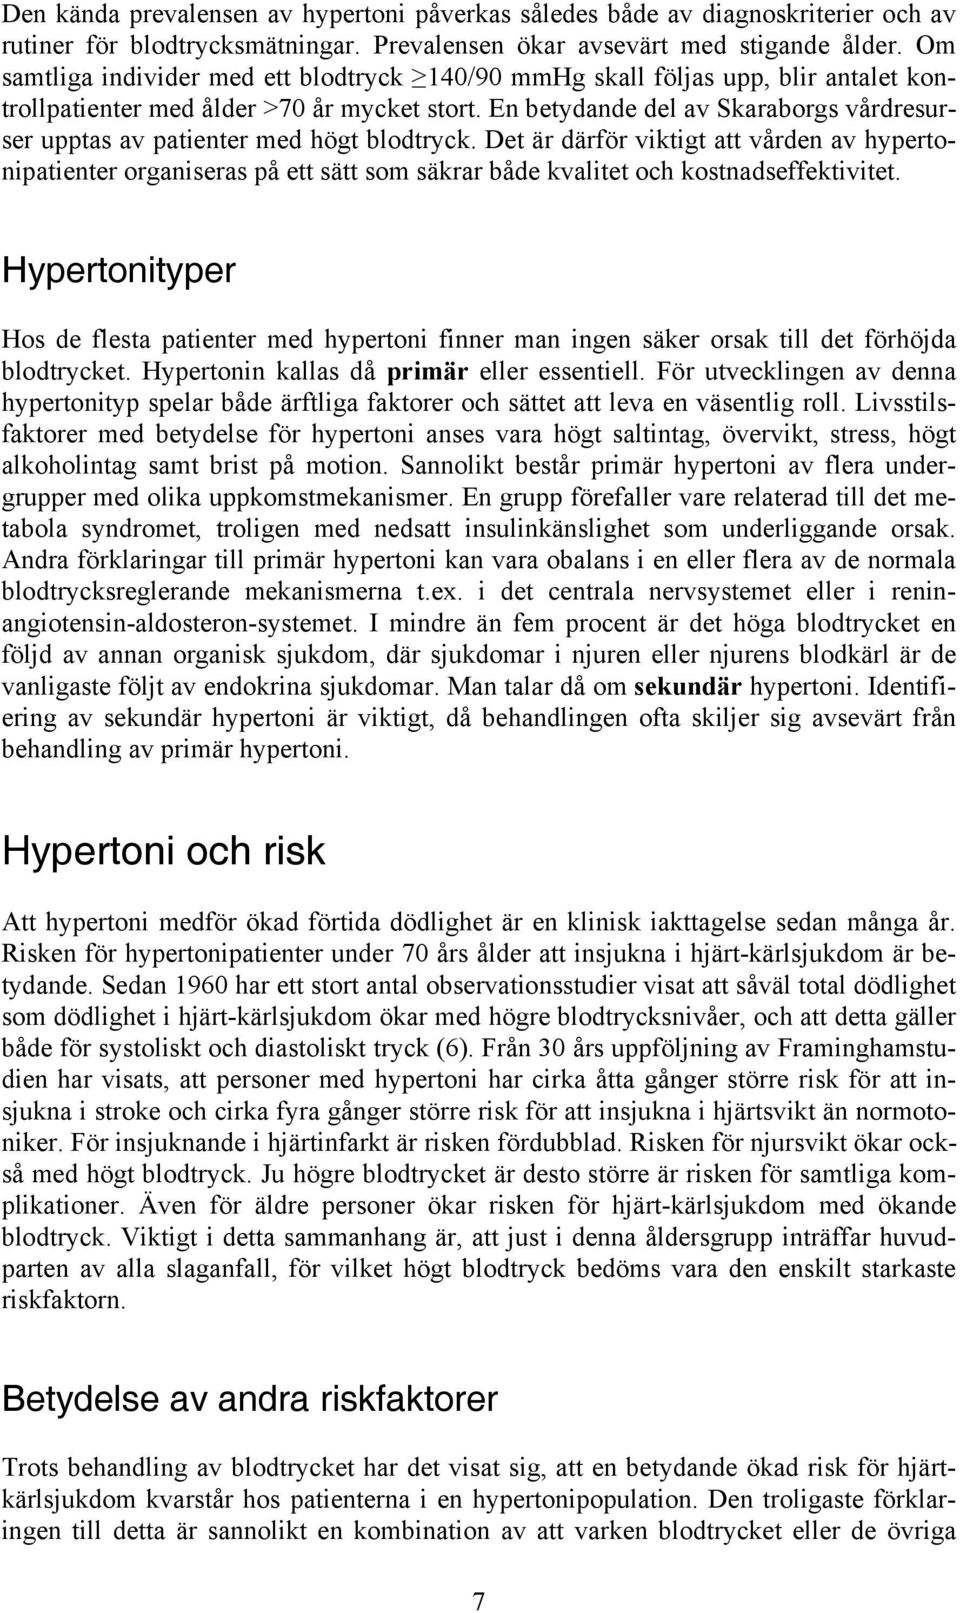 En betydande del av Skaraborgs vårdresurser upptas av patienter med högt blodtryck.